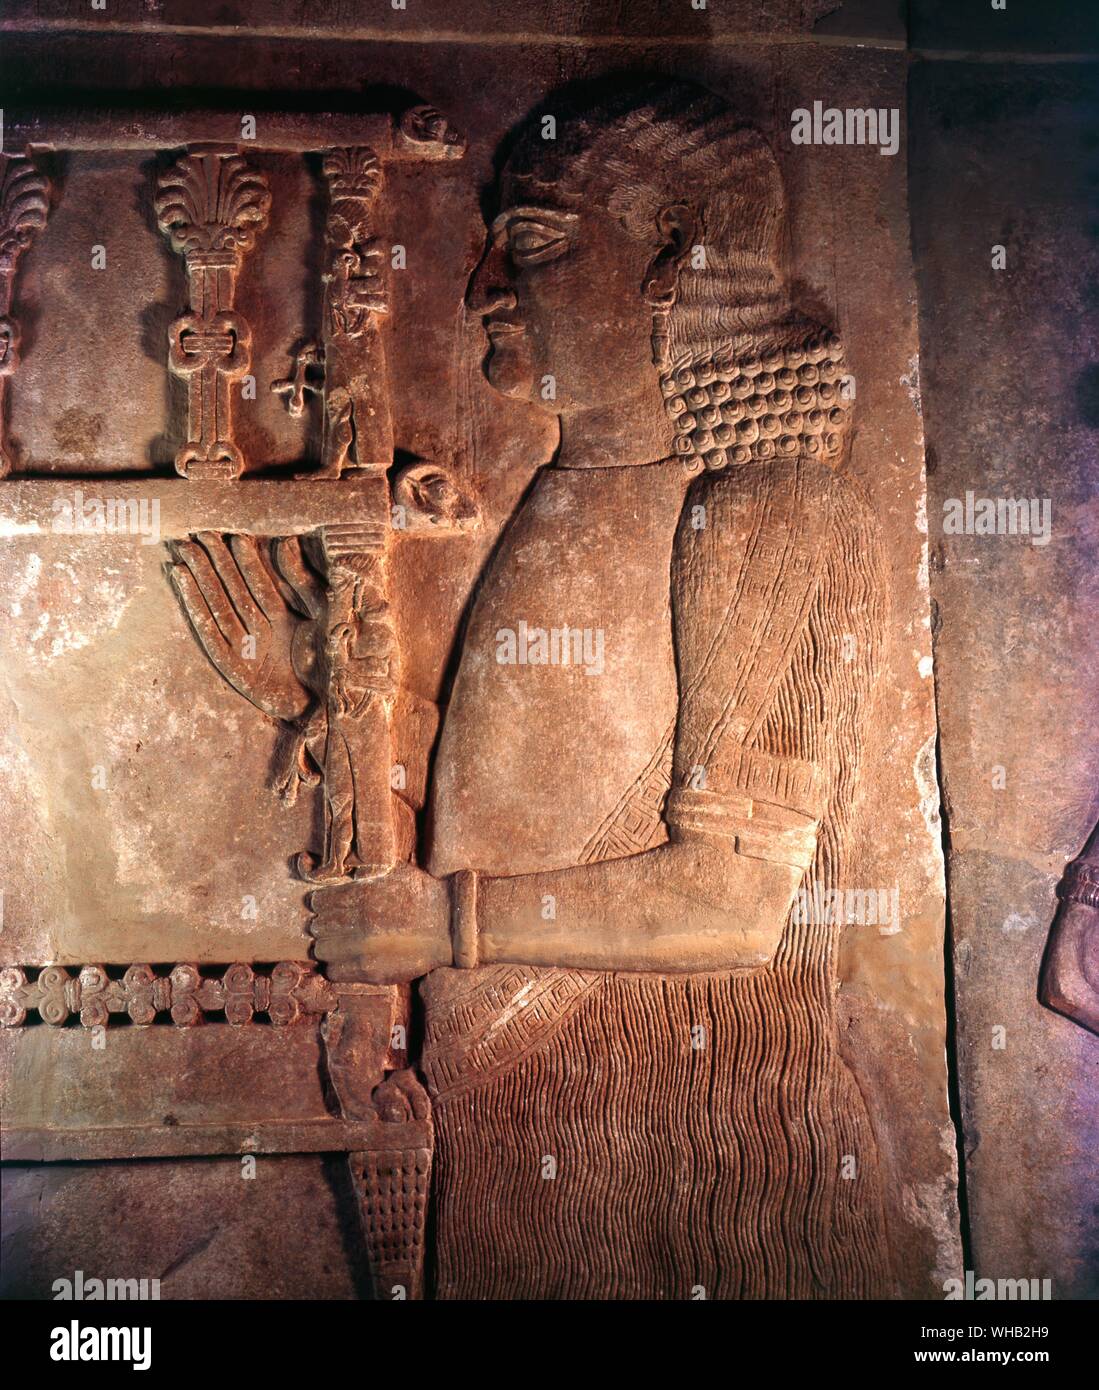 Bas-relief assyrien néo - Détail 721-705 BC. Musée iraquien de Bagdad Banque D'Images